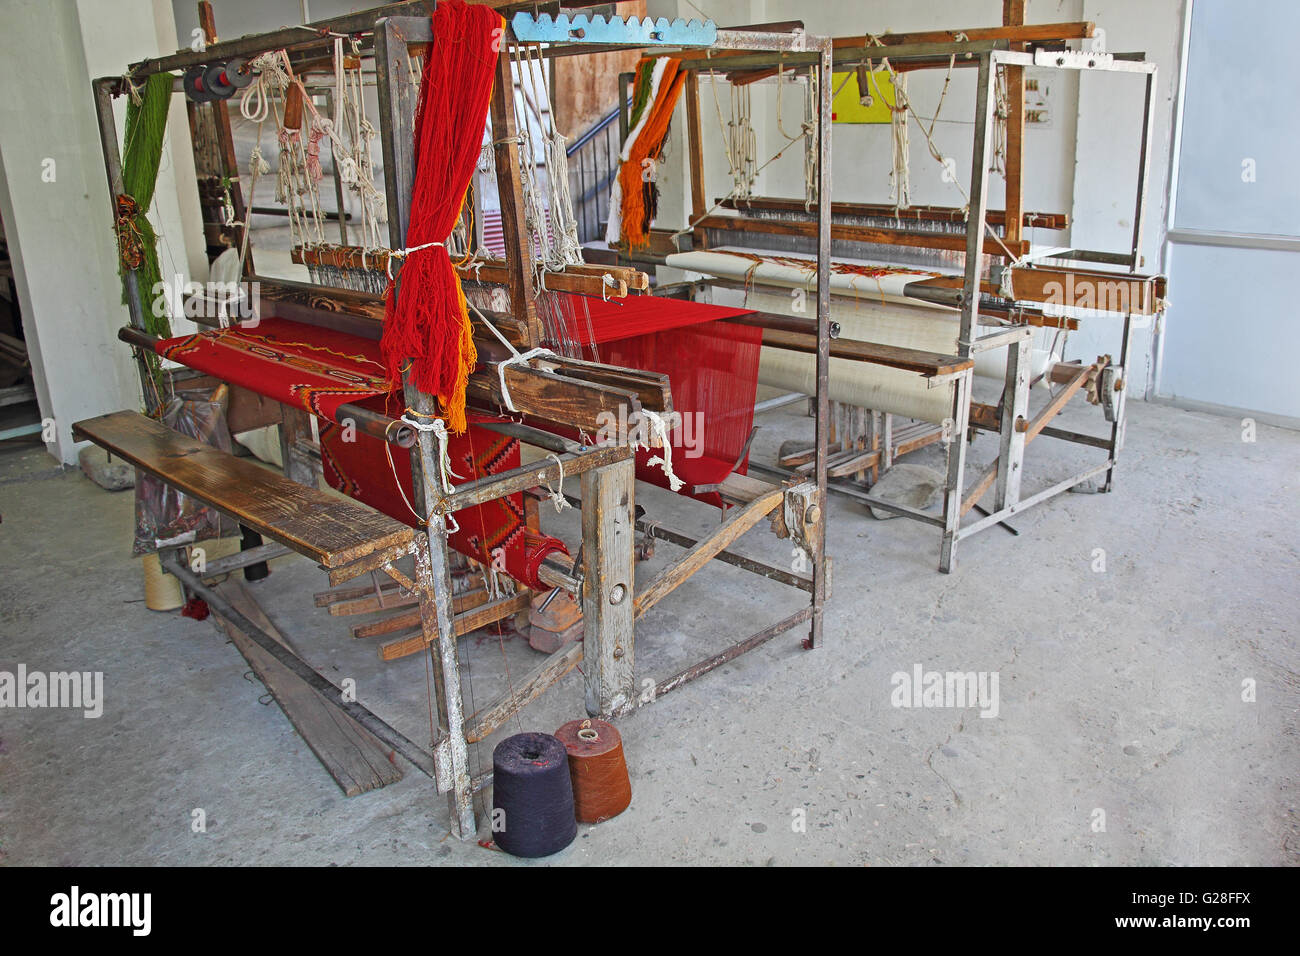 Verlassener Alter Handwebstuhl Maschine zur Herstellung von Tüchern und Stoffen in Indien verwendet. Stockfoto